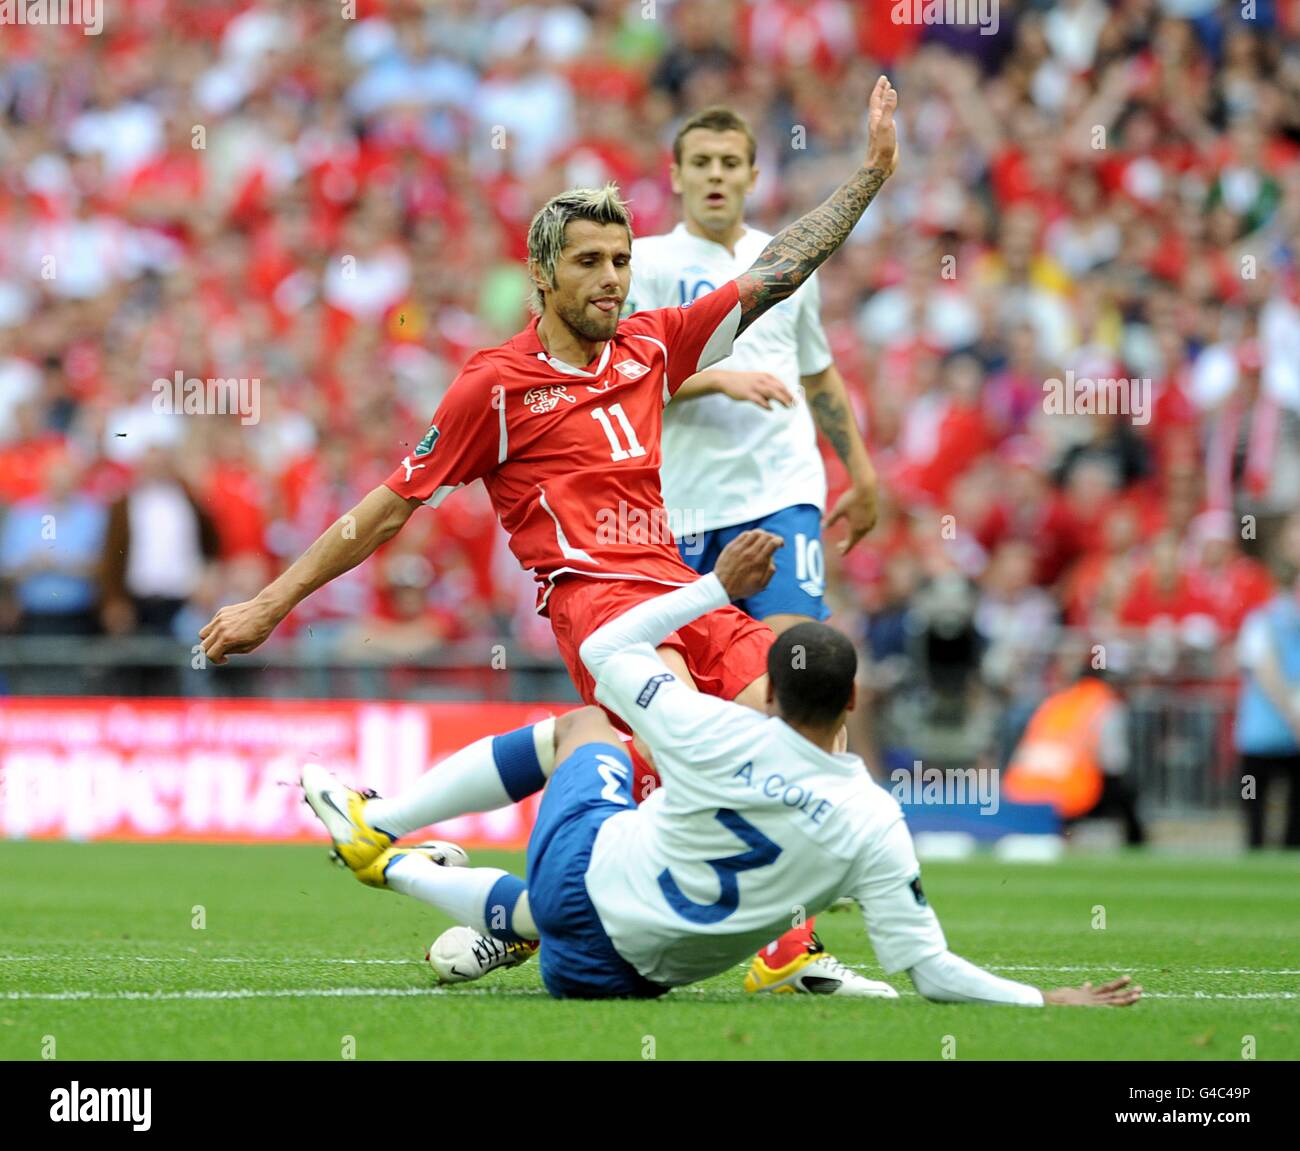 Soccer - UEFA Euro 2012 - Qualifying - Group G - England v Switzerland - Wembley Stadium. England's Ashley Cole (3) and Switzerland's Valon Behrami battle for the ball. Stock Photo